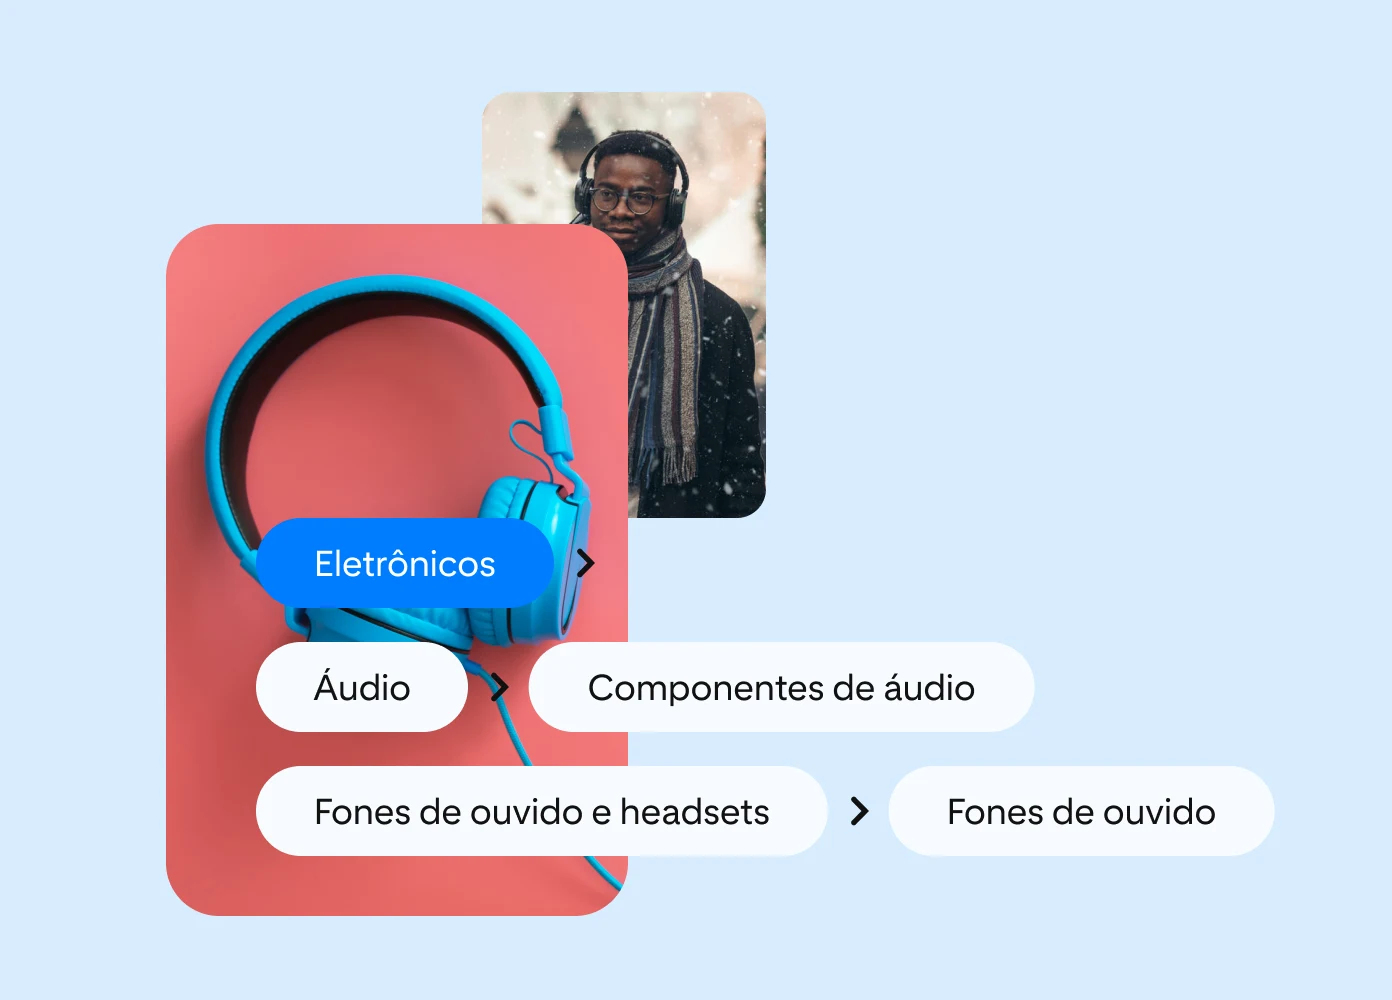 A imagem apresenta dois Pins sobrepostos. O primeiro mostra um homem usando fones de ouvido, enquanto o segundo exibe fones de ouvido azuis contra um fundo vermelho. Os balões de texto na imagem indicam os níveis de categorização do produto.